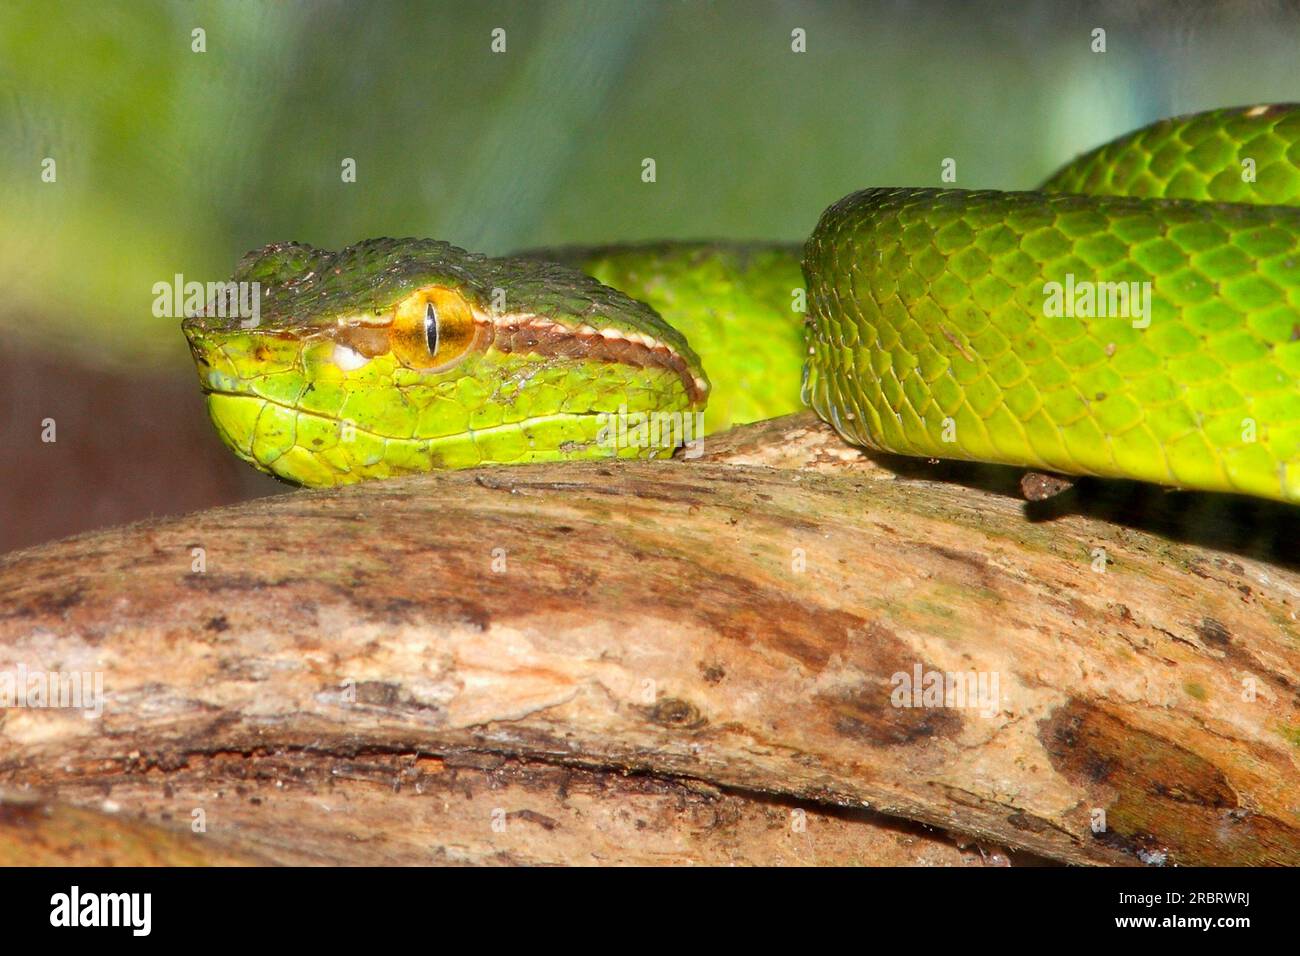 Bornean Keeled Pit Viper, Tropidolaemus subannulatus. Das ist eine giftige Schlange, mit Wärmesensoren an den Seiten des Kopfes. Auch bekannt als Norden Stockfoto